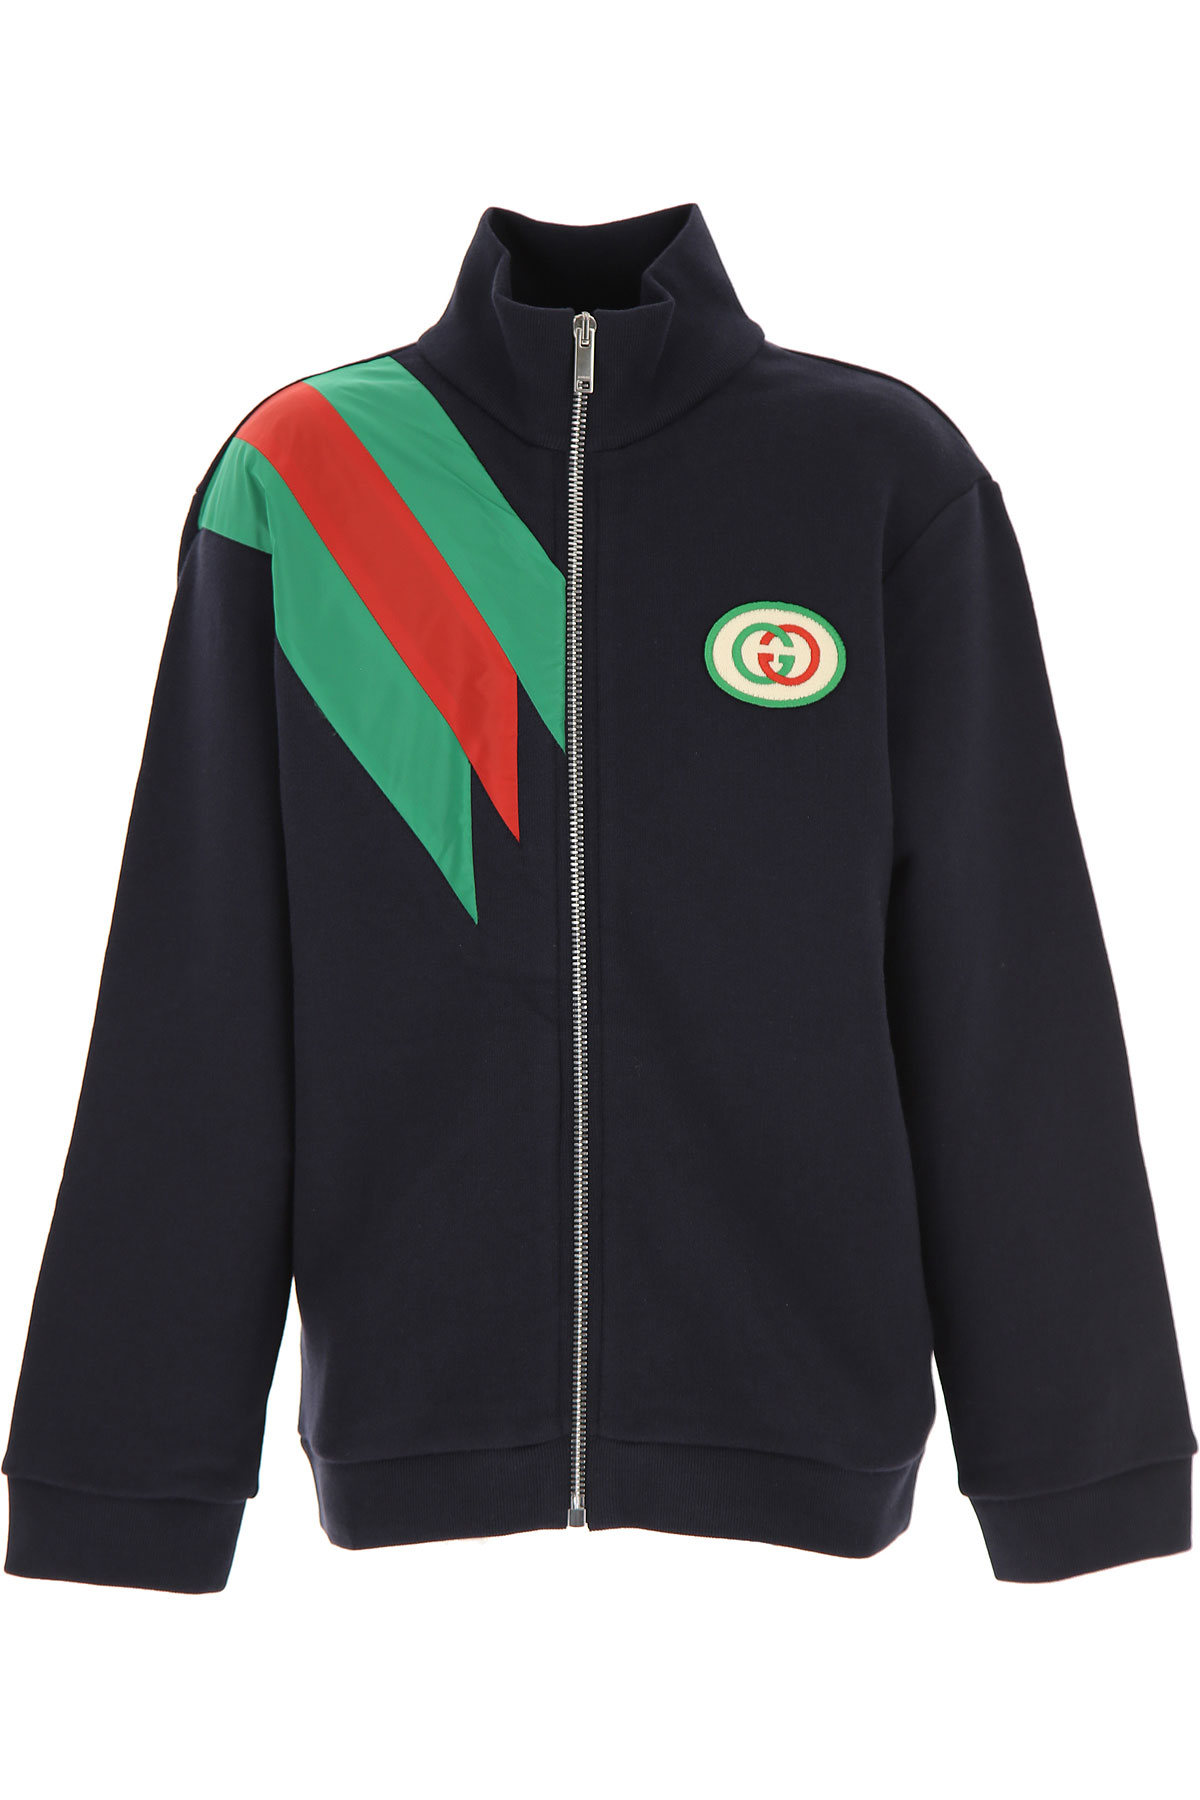 Gucci Kinder Sweatshirt & Kapuzenpullover für Jungen Günstig im Sale, Blau, Baumwolle, 2017, 6Y 8Y